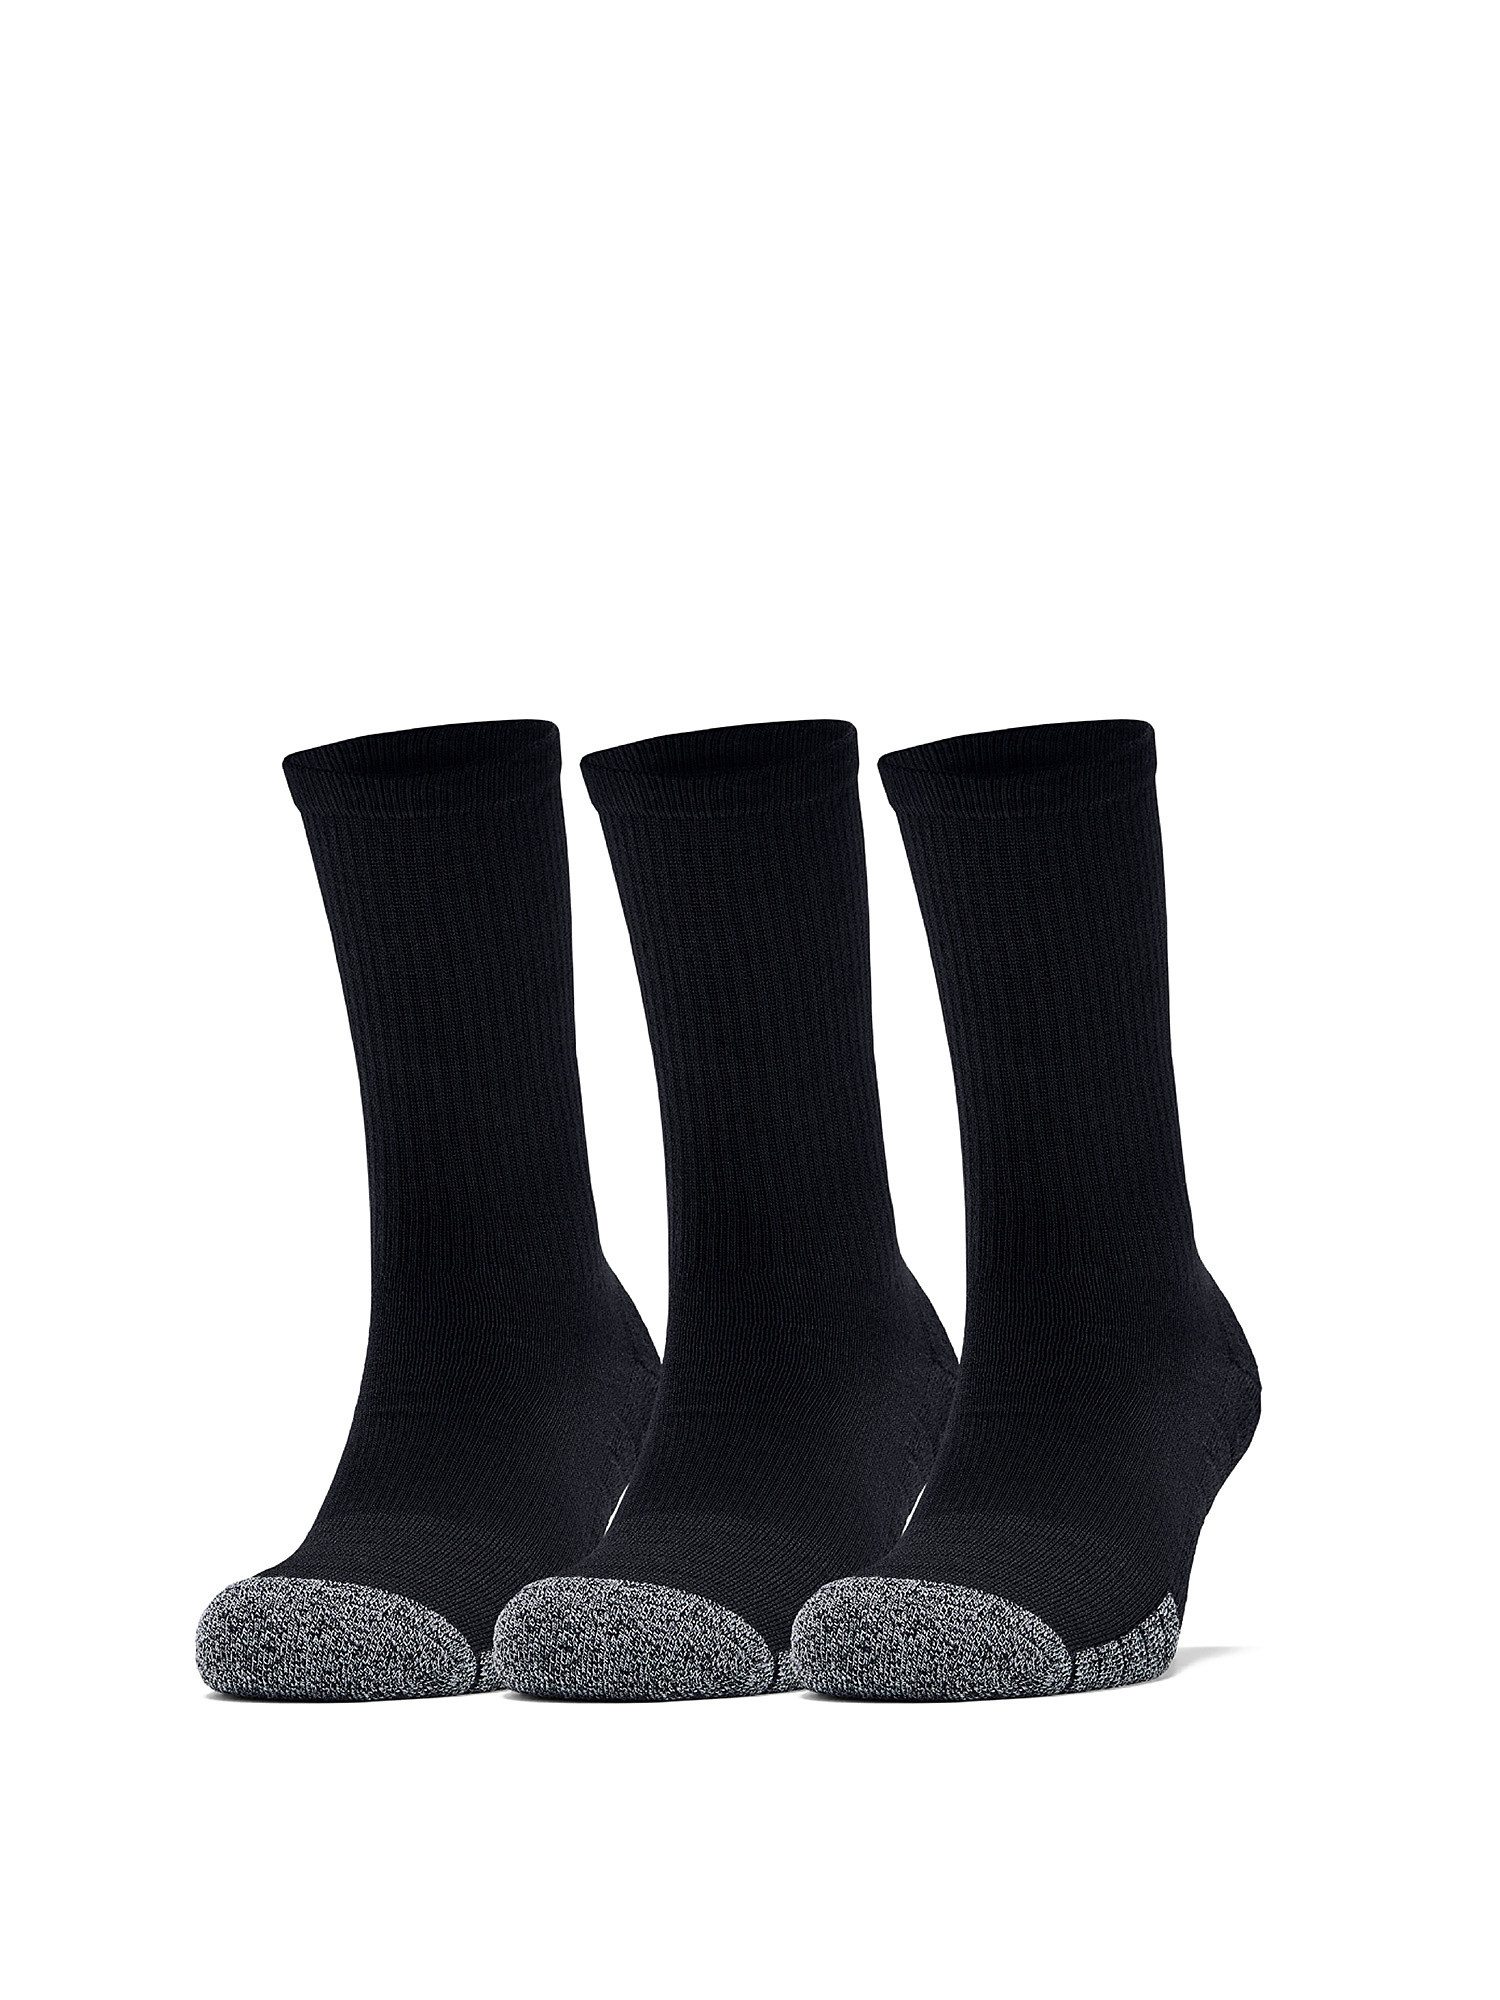 Under Armour - HeatGear® Crew socks, Black, large image number 3